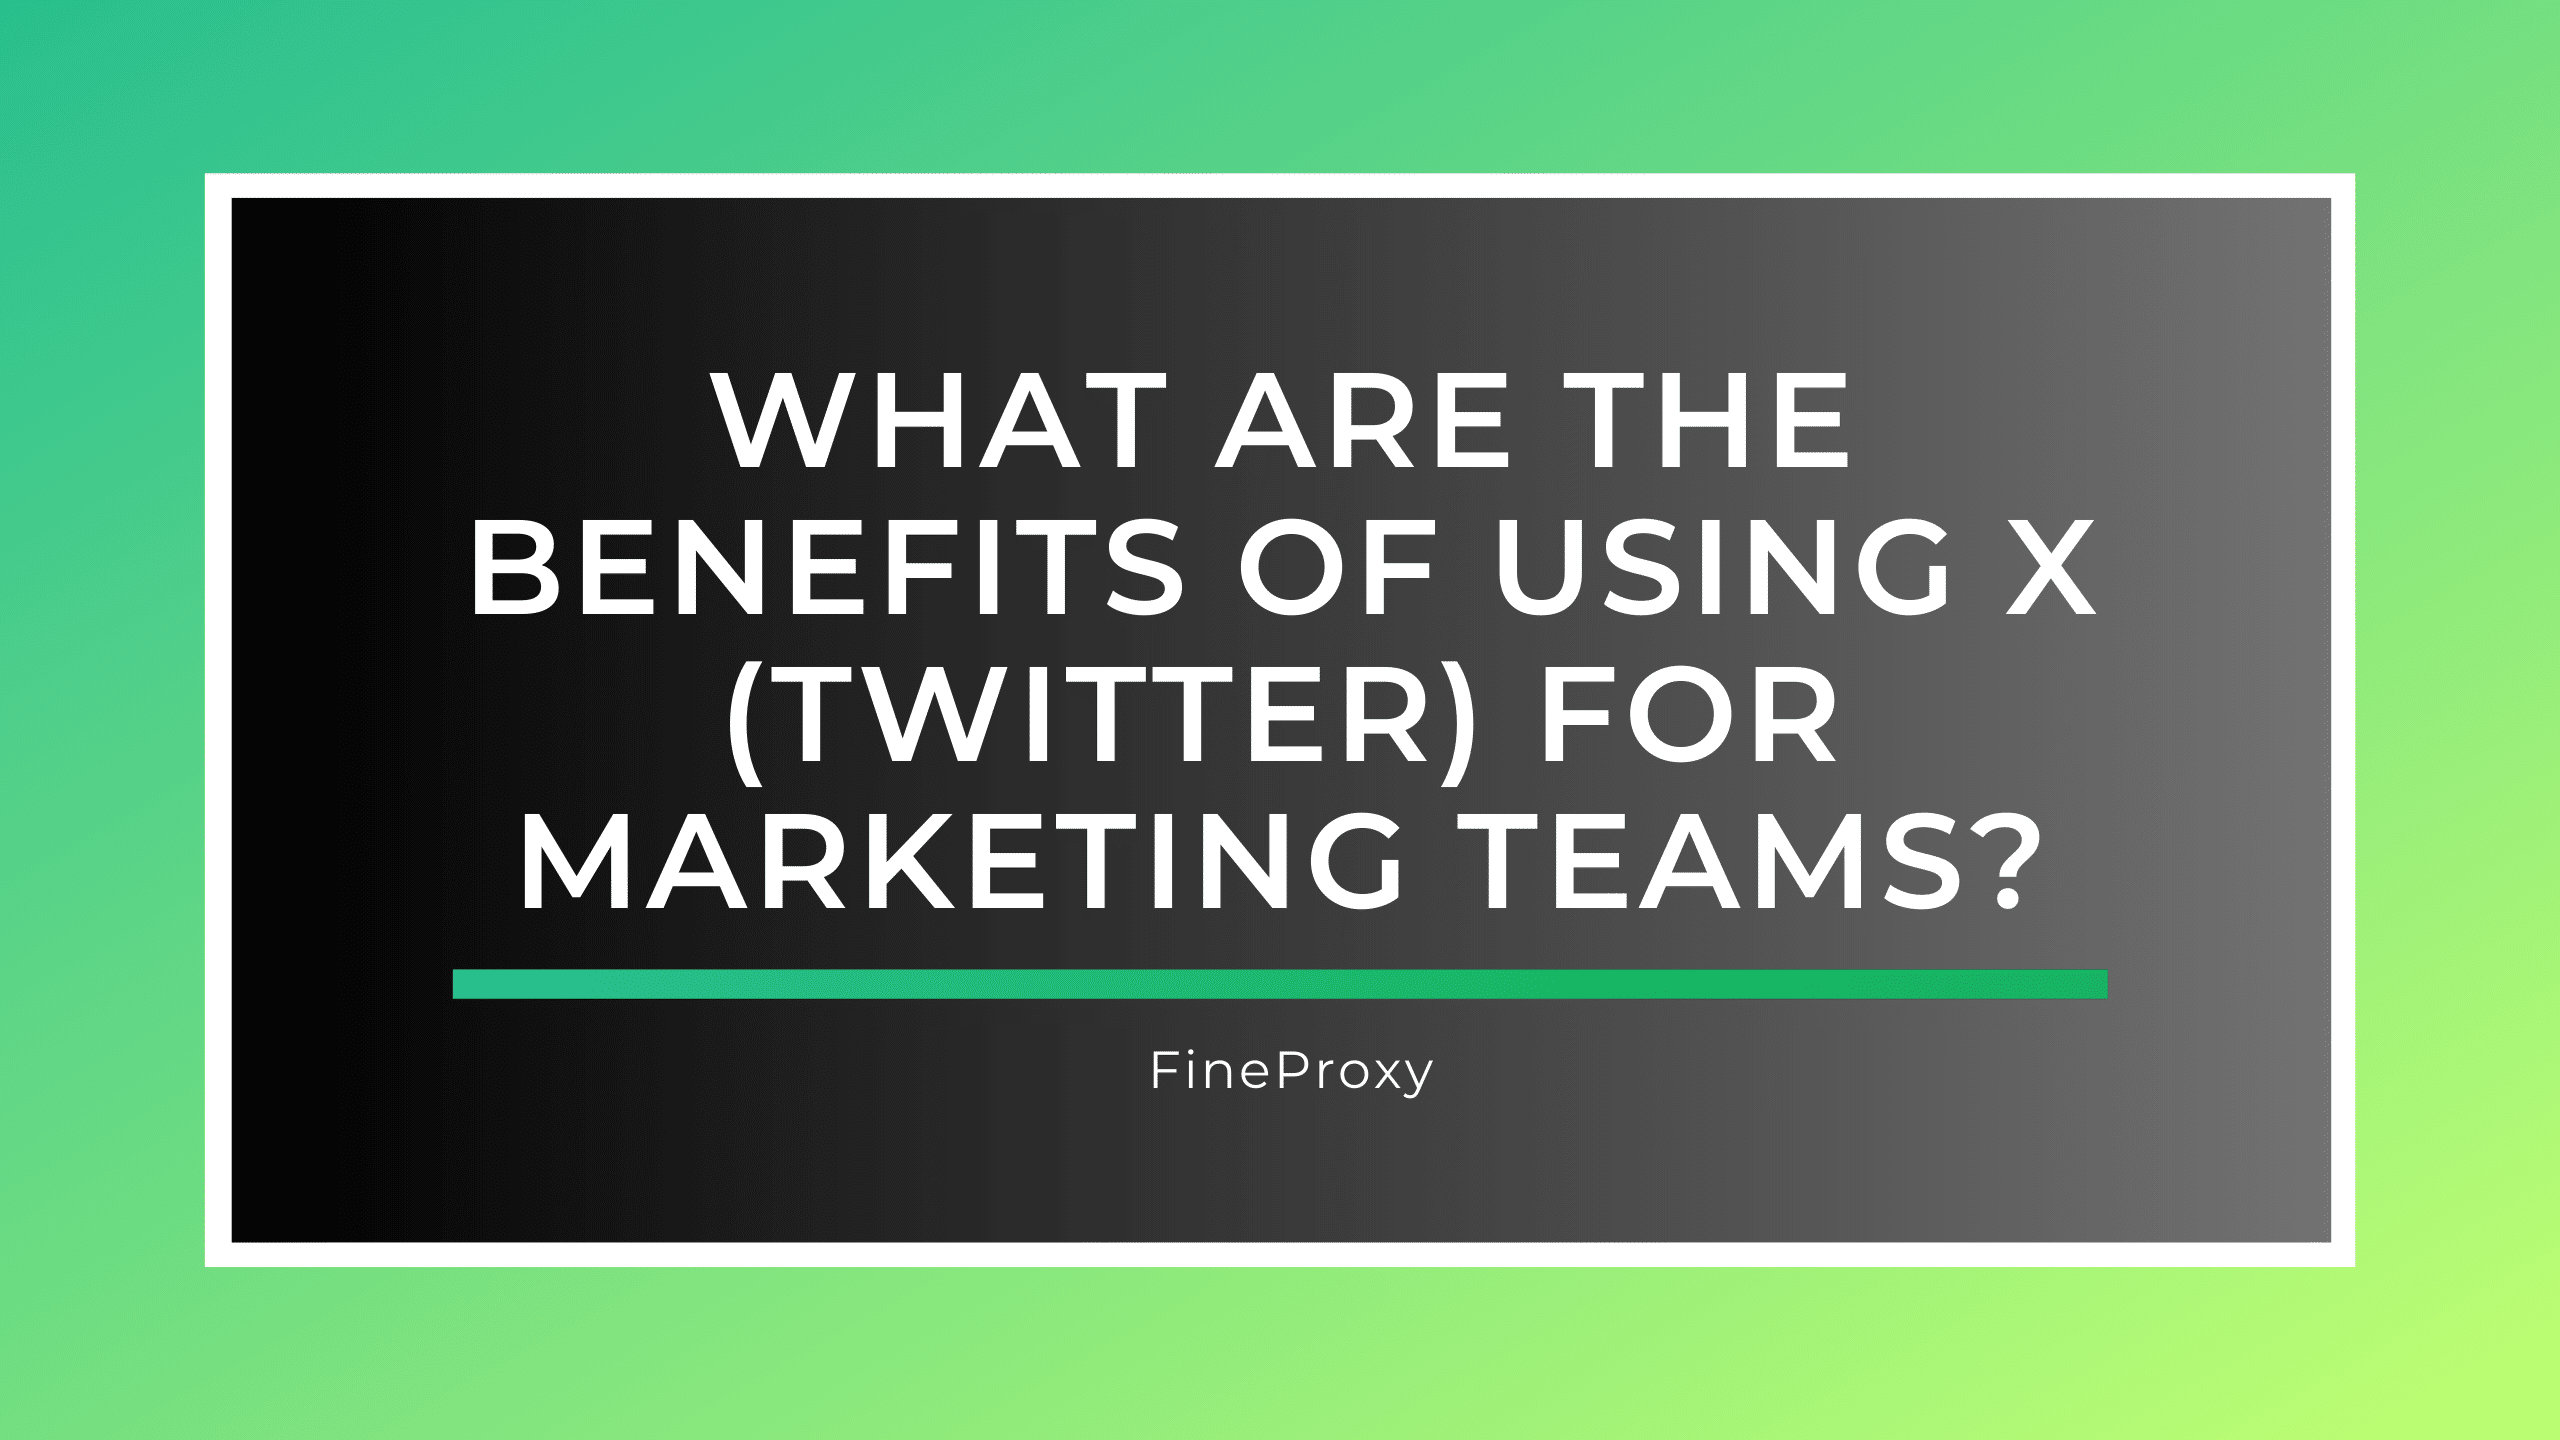 मार्केटिंग टीमों के लिए एक्स (ट्विटर) का उपयोग करने के क्या लाभ हैं?